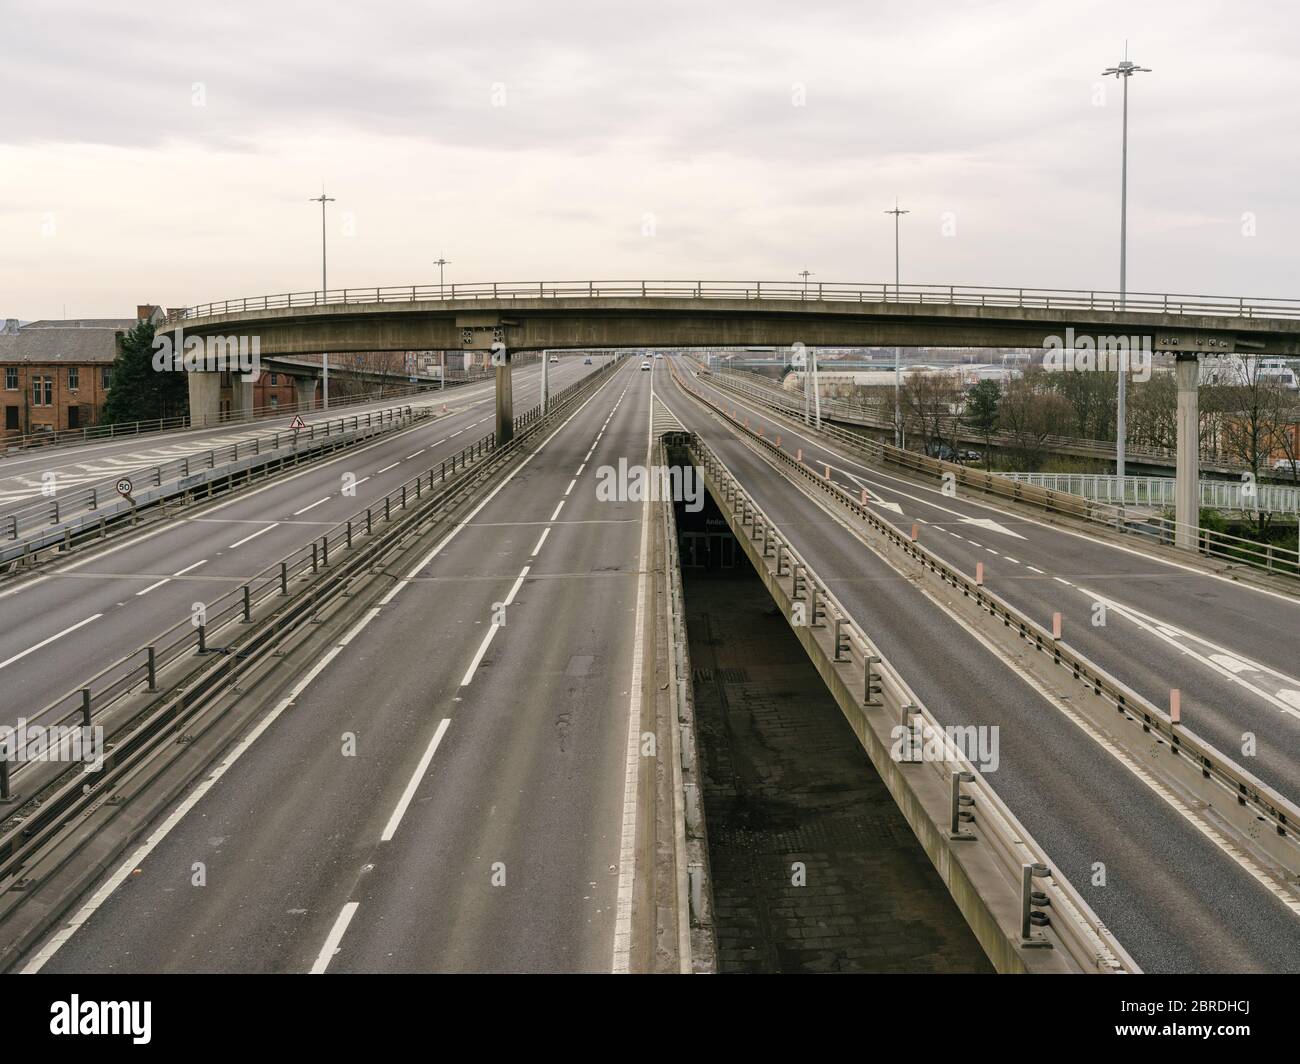 L'autoroute M8 et le pont de Kingston, généralement très fréquentés, traversent la ville de Glasgow et la rivière Clyde, ce qui illustre le fait que le gouvernement se respecte, les directives de distance sociale et les avis de « séjour à domicile » lors de la pandémie du coronavirus. Banque D'Images